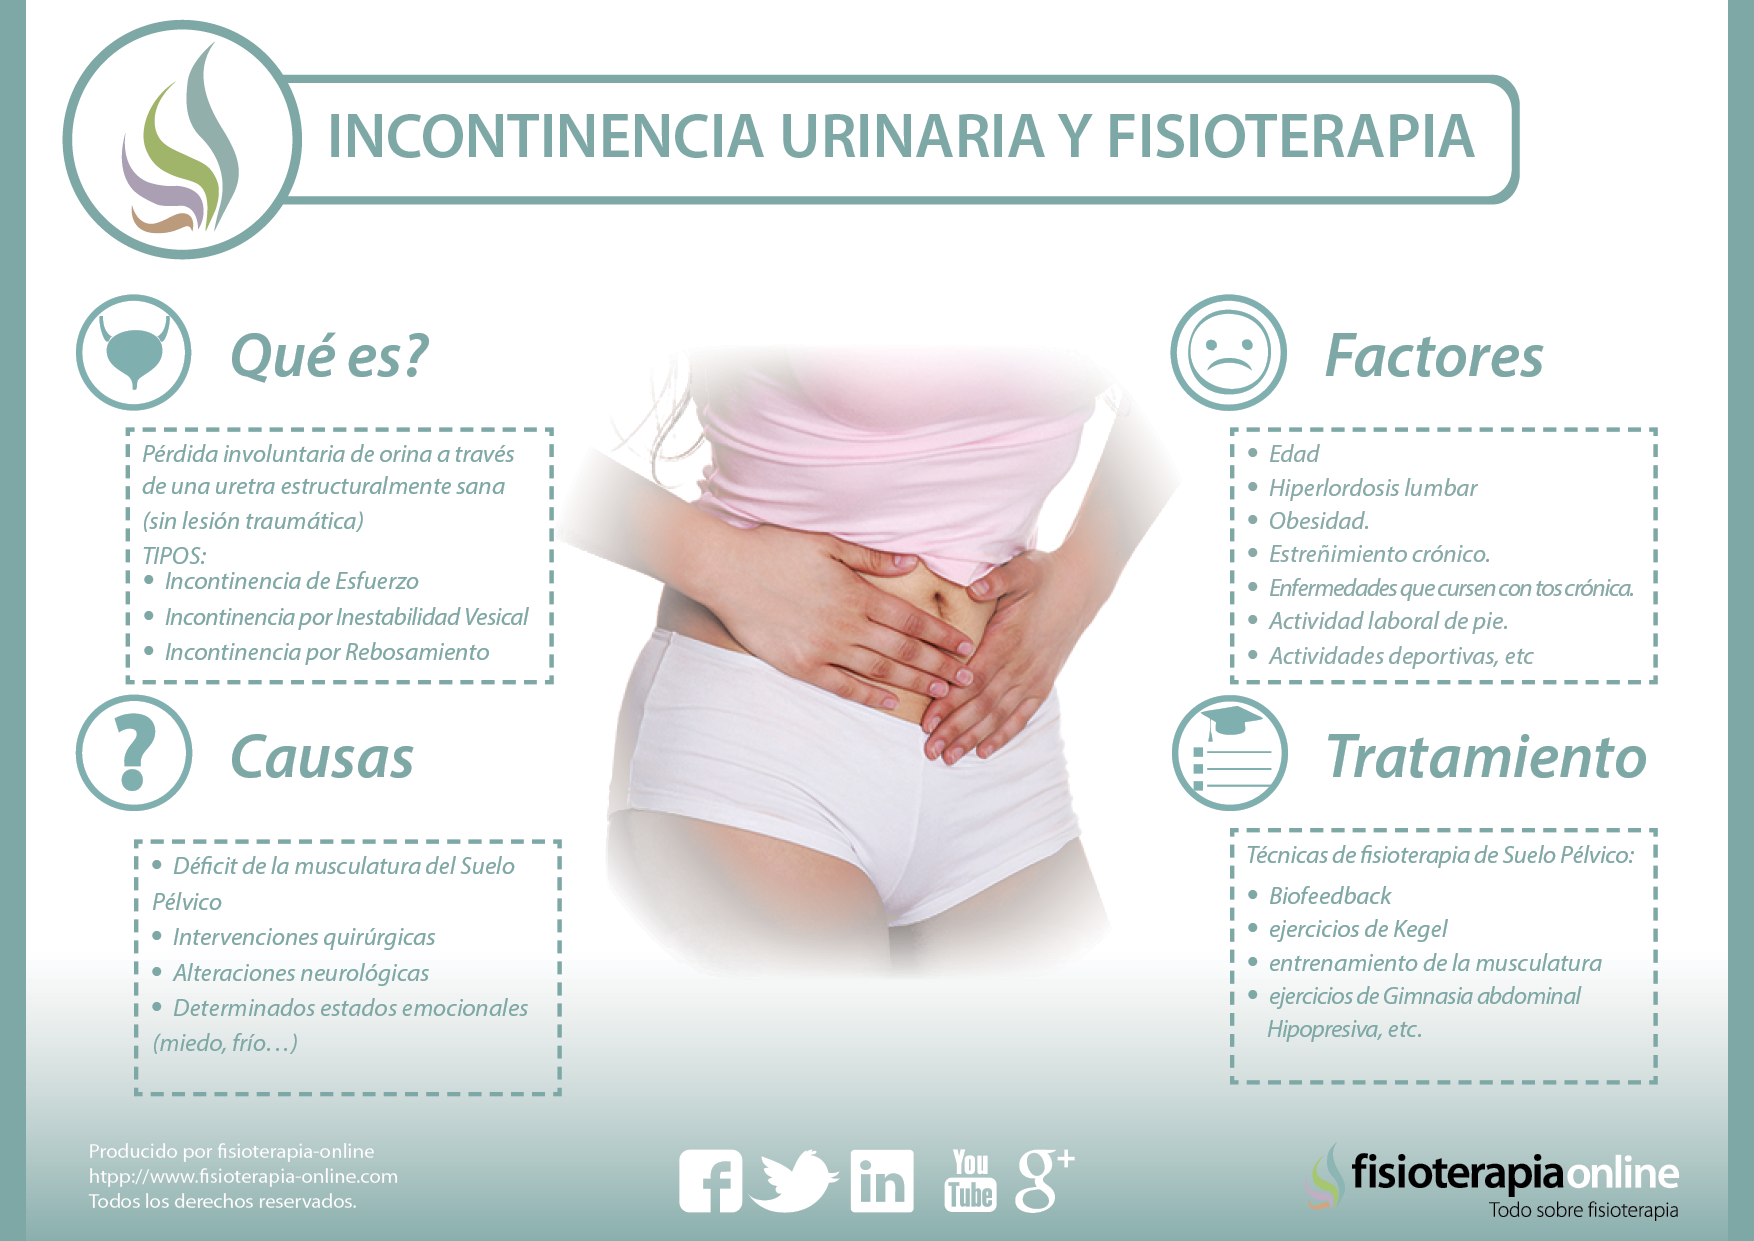 Qué es la incontinencia urinaria? Causas, tipos y tratamiento